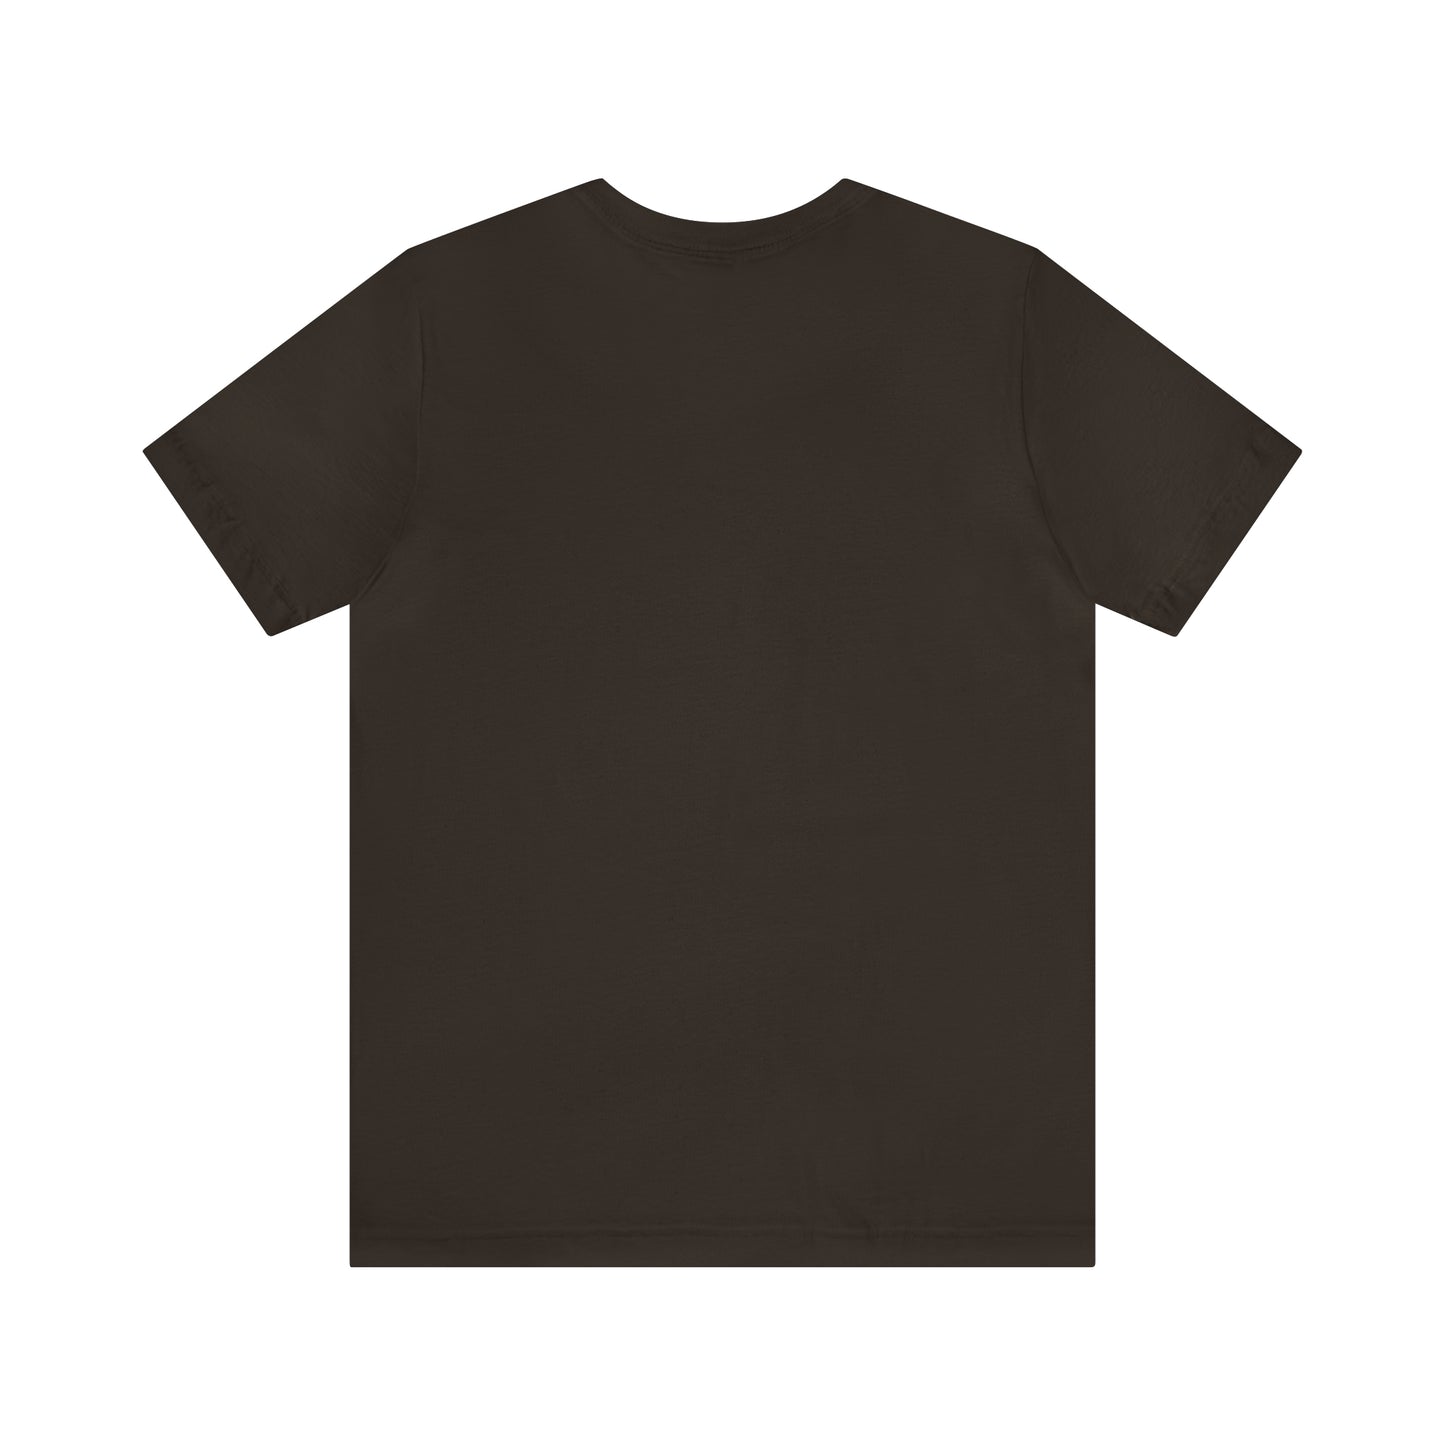 Summer T-shirt Unisex Jersey Short Sleeve Tee